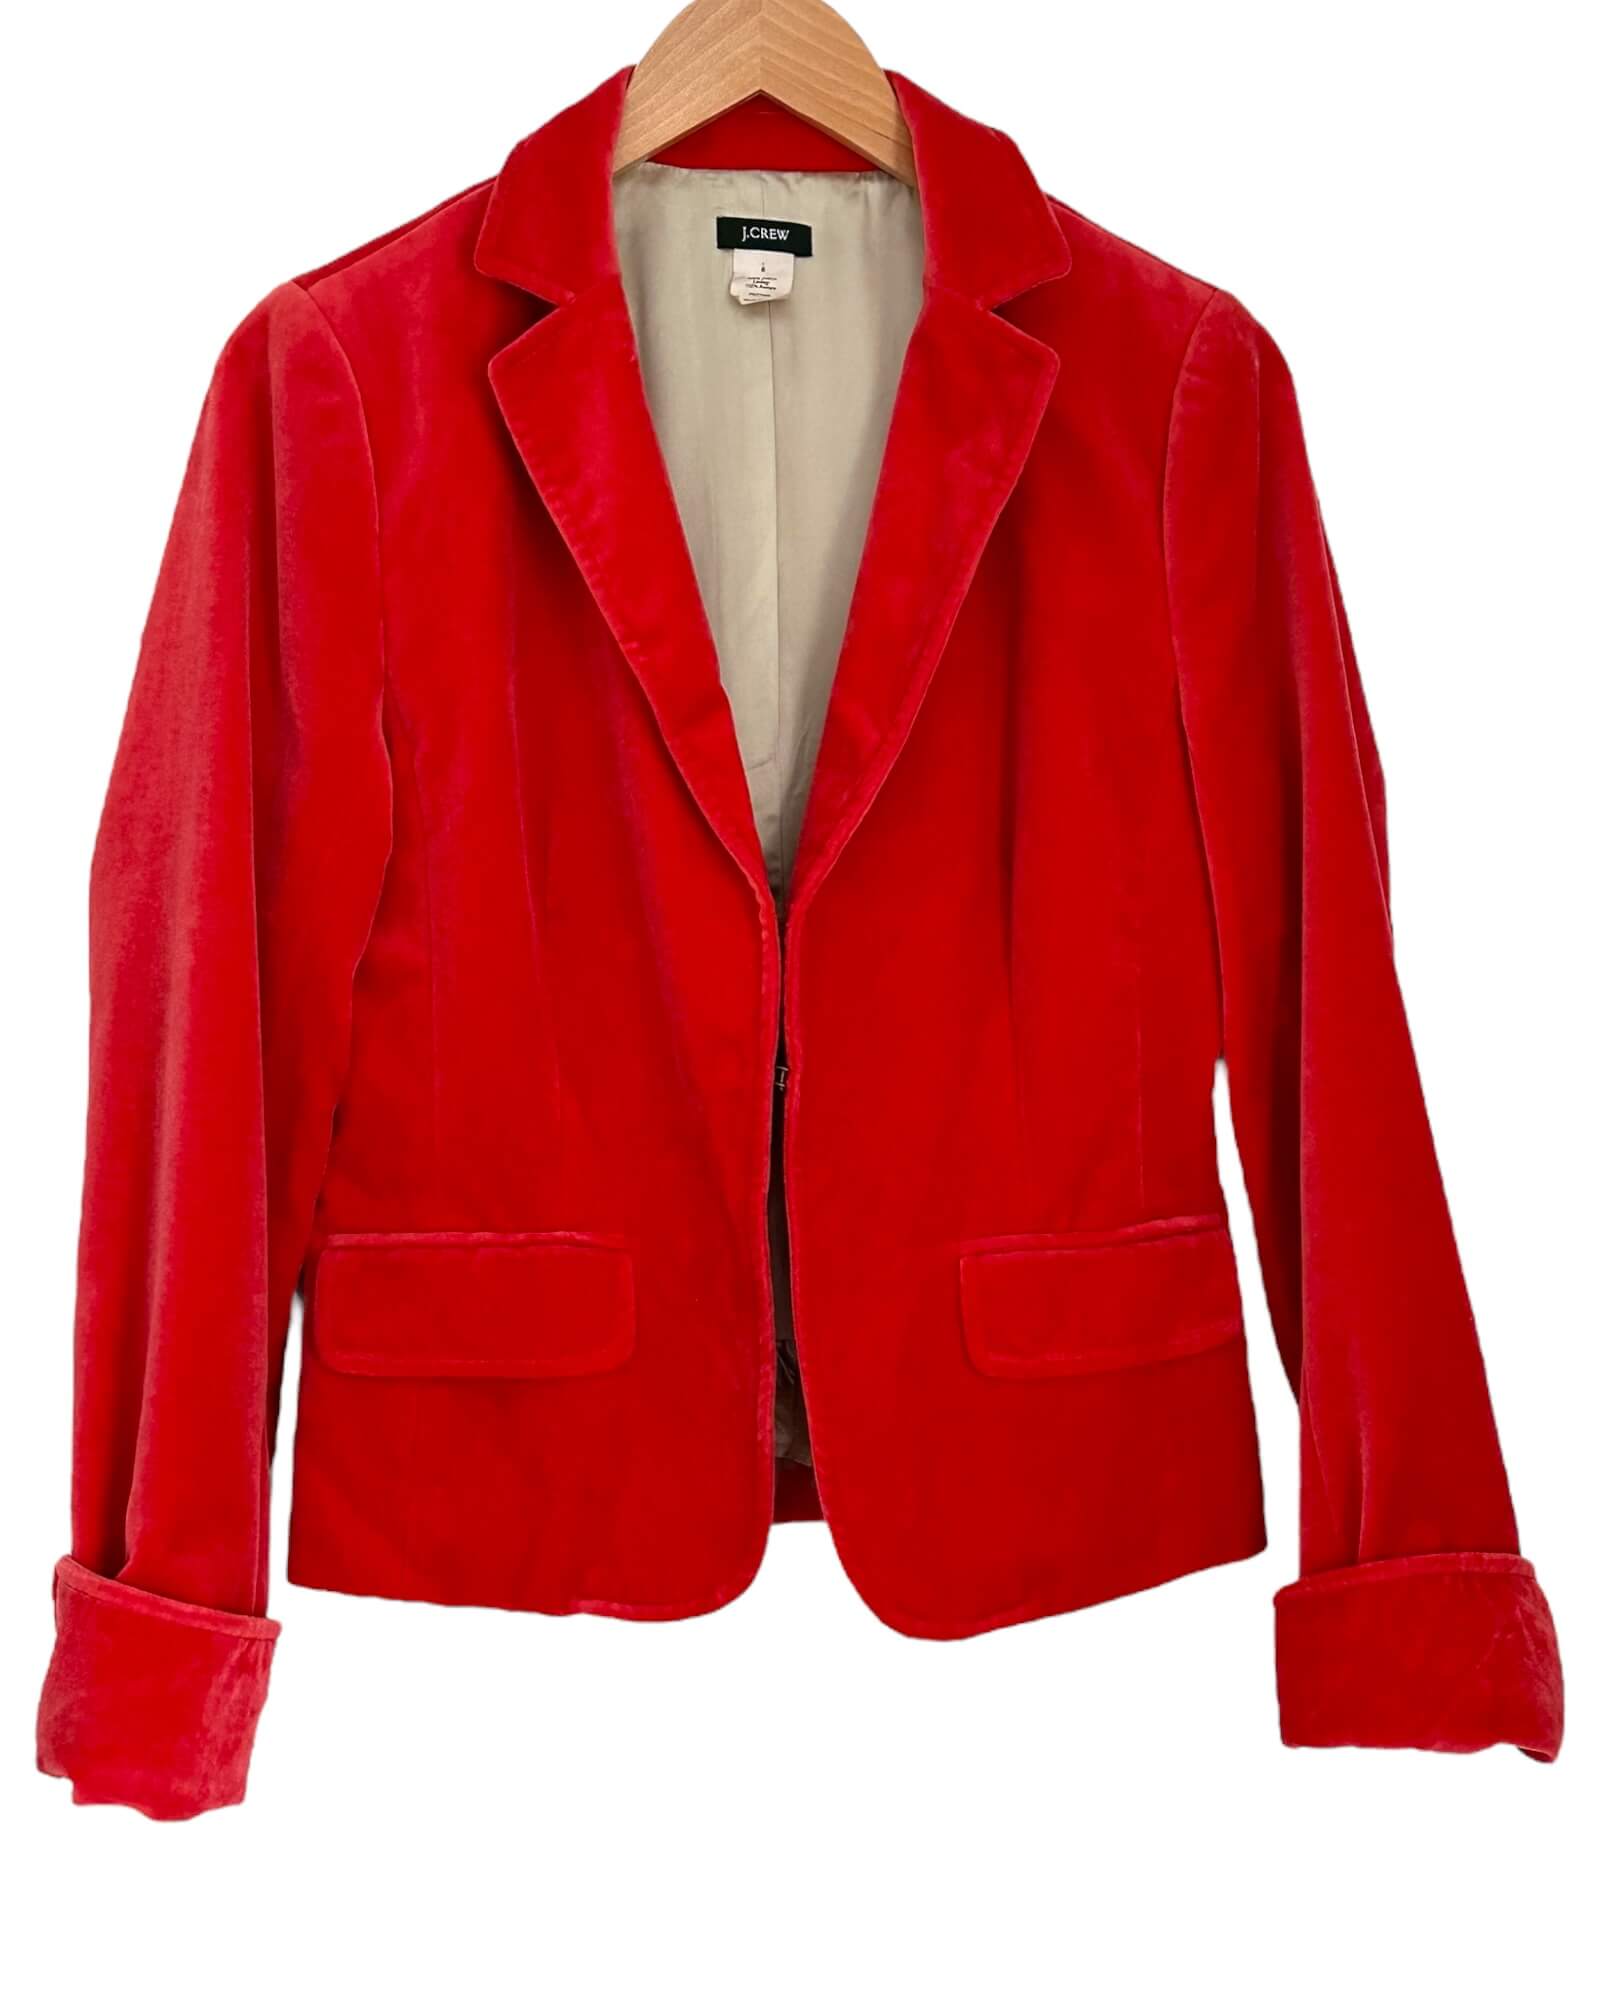 Warm Autumn Fire Red Velvet Blazer Jacket